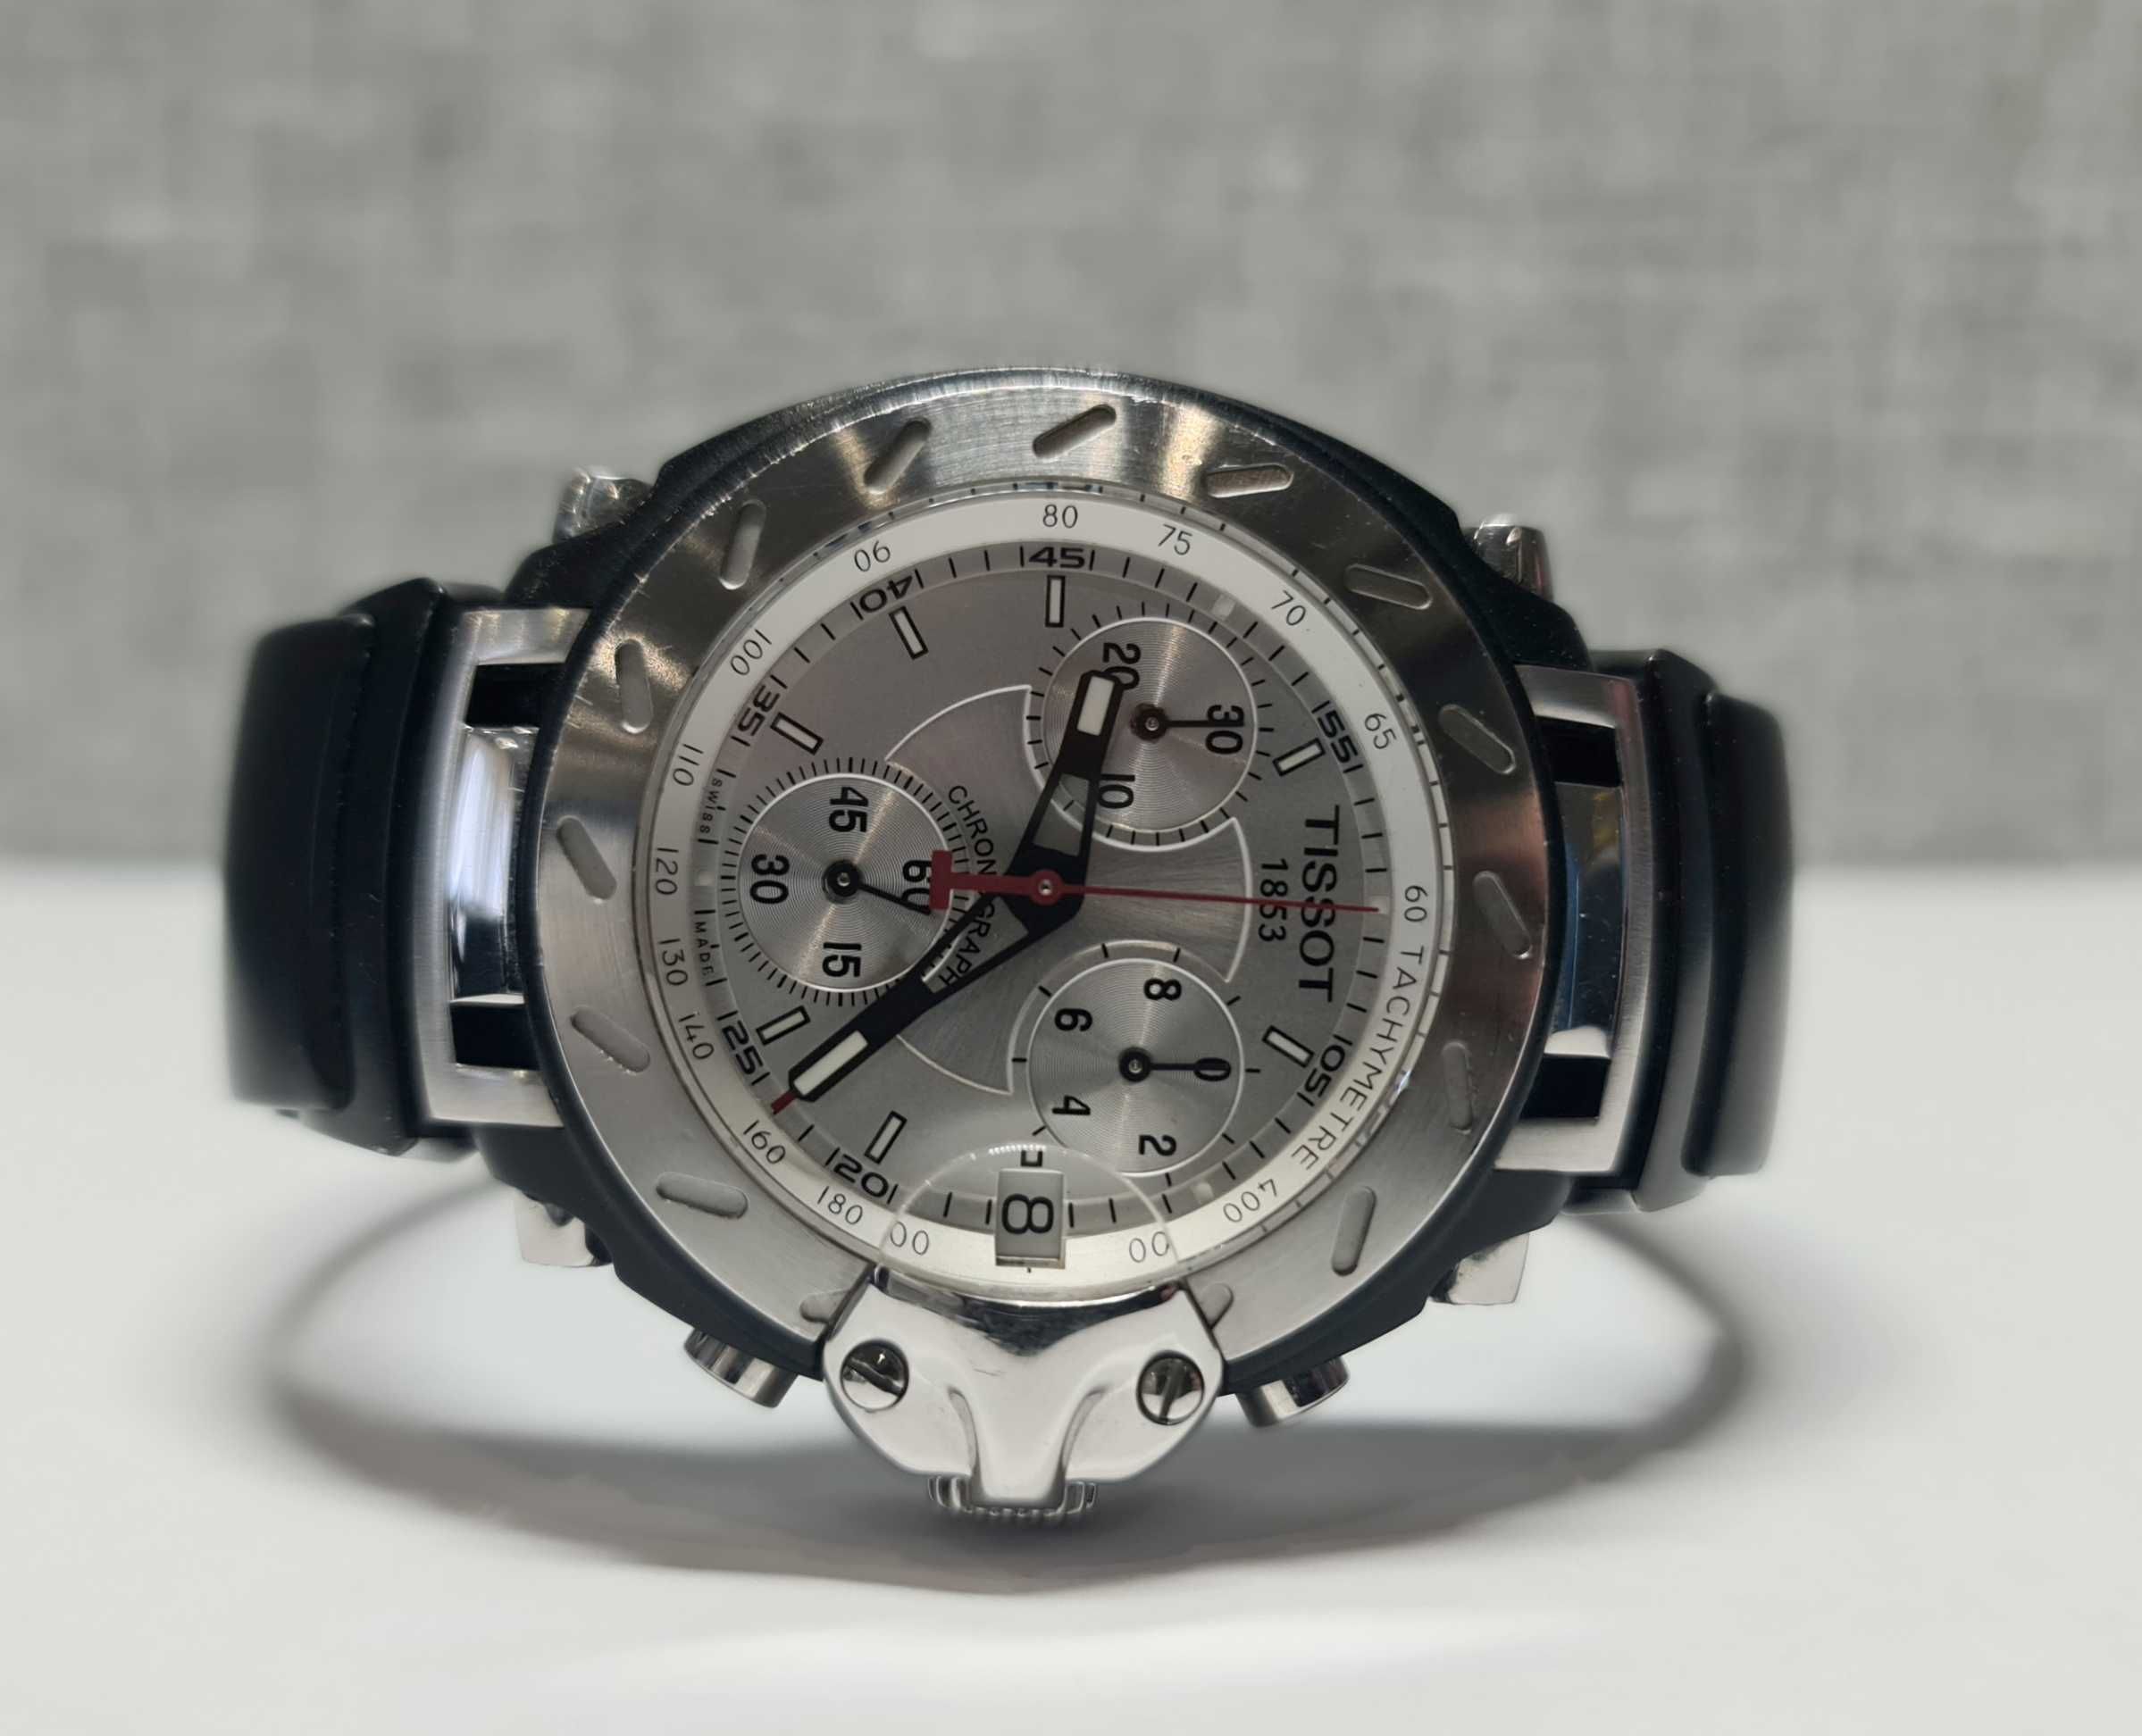 Чоловічий годинник часы Tissot T-Race Chronograph Swiss Made